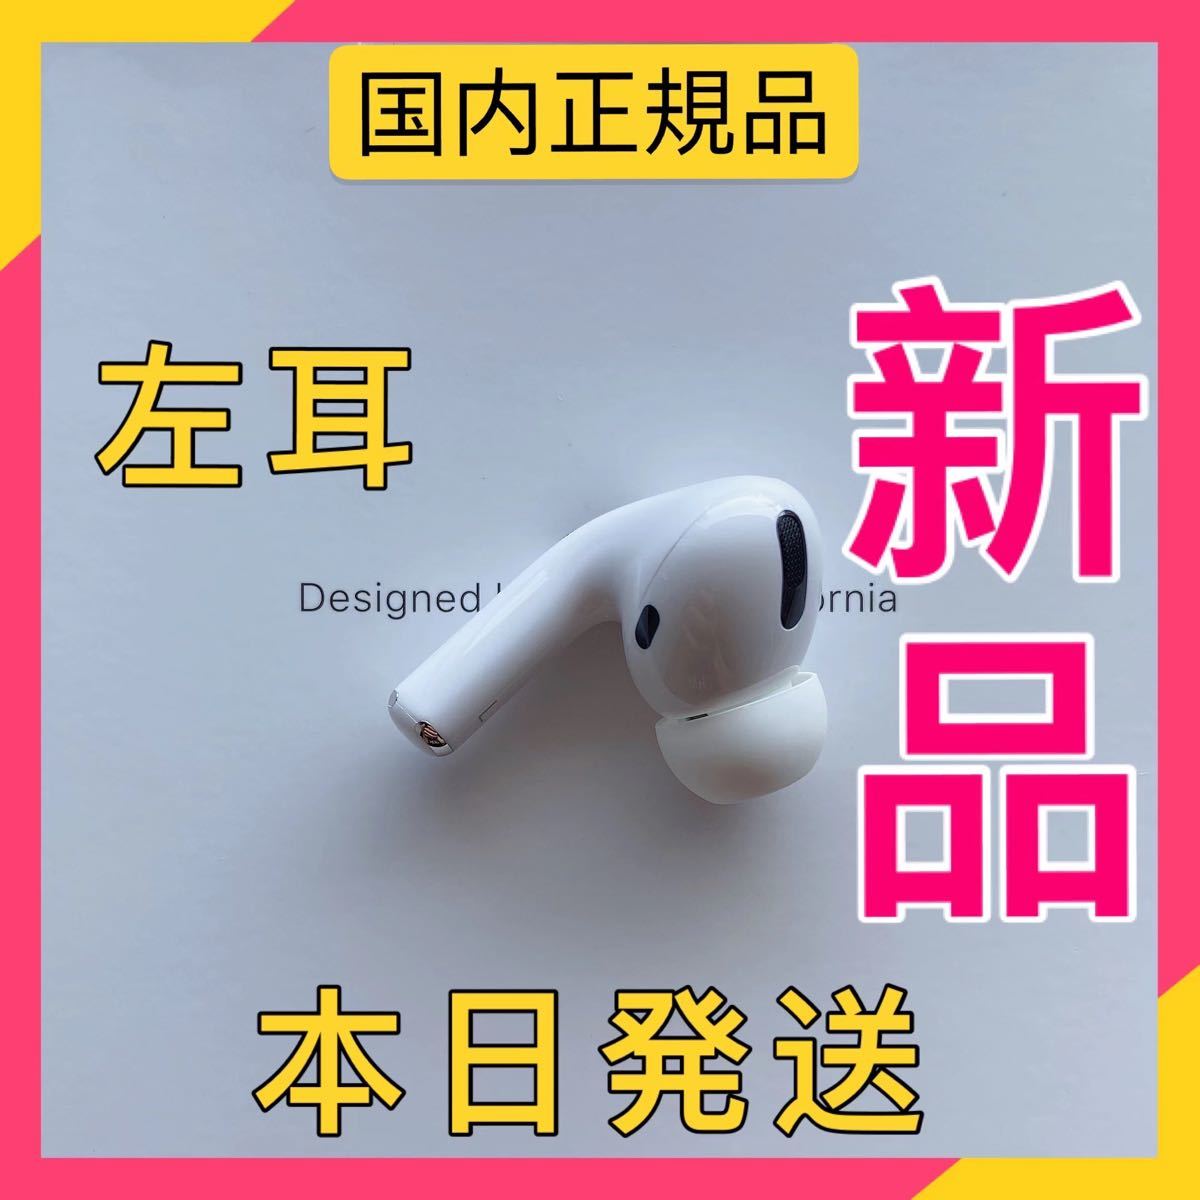 新品 エアーポッズプロ 左耳のみ Apple AirPods Pro L片耳 正規品 - delvehealth.com